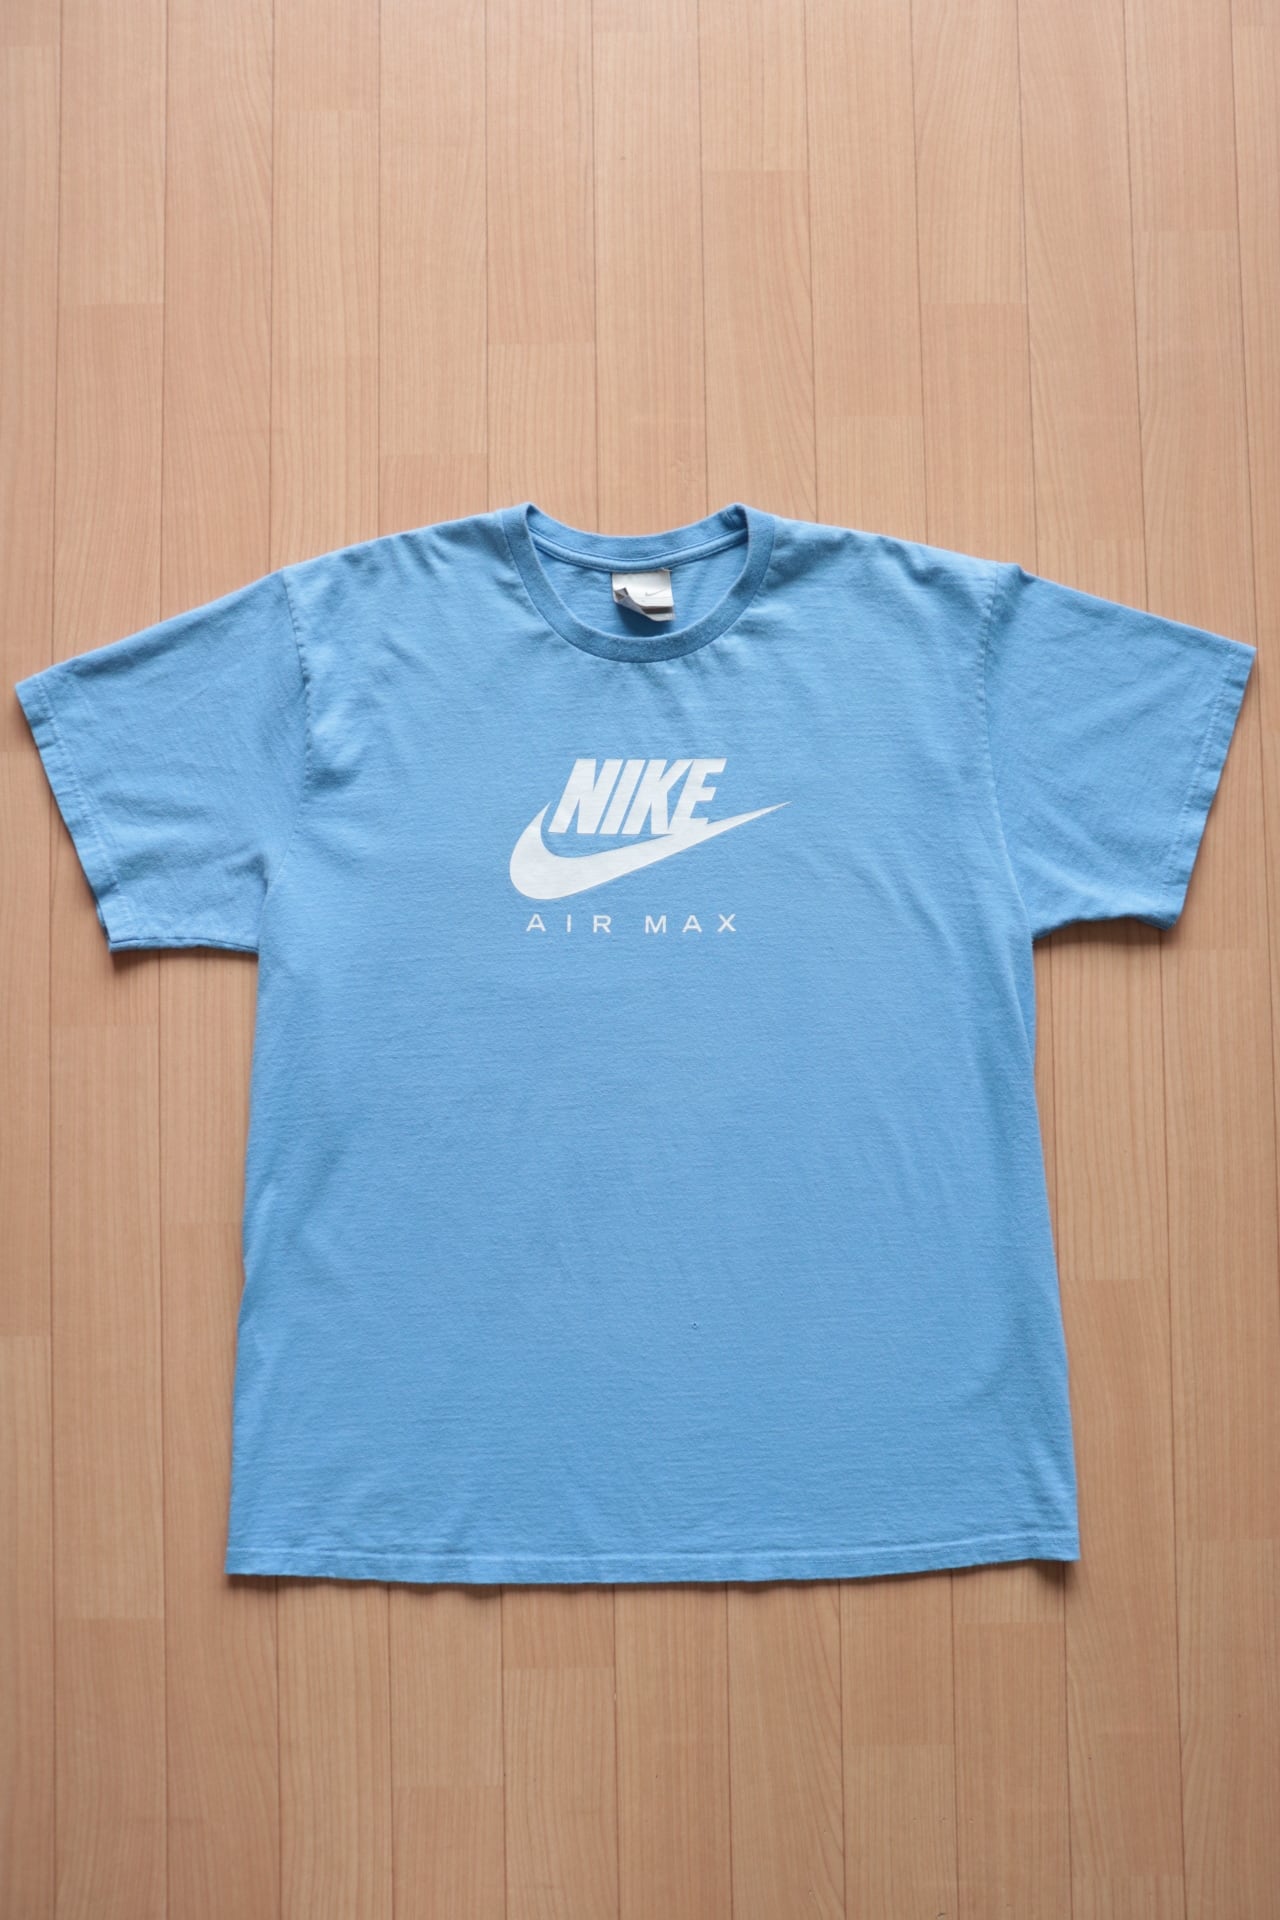 Vintage NIKE air max t shirt | Cary